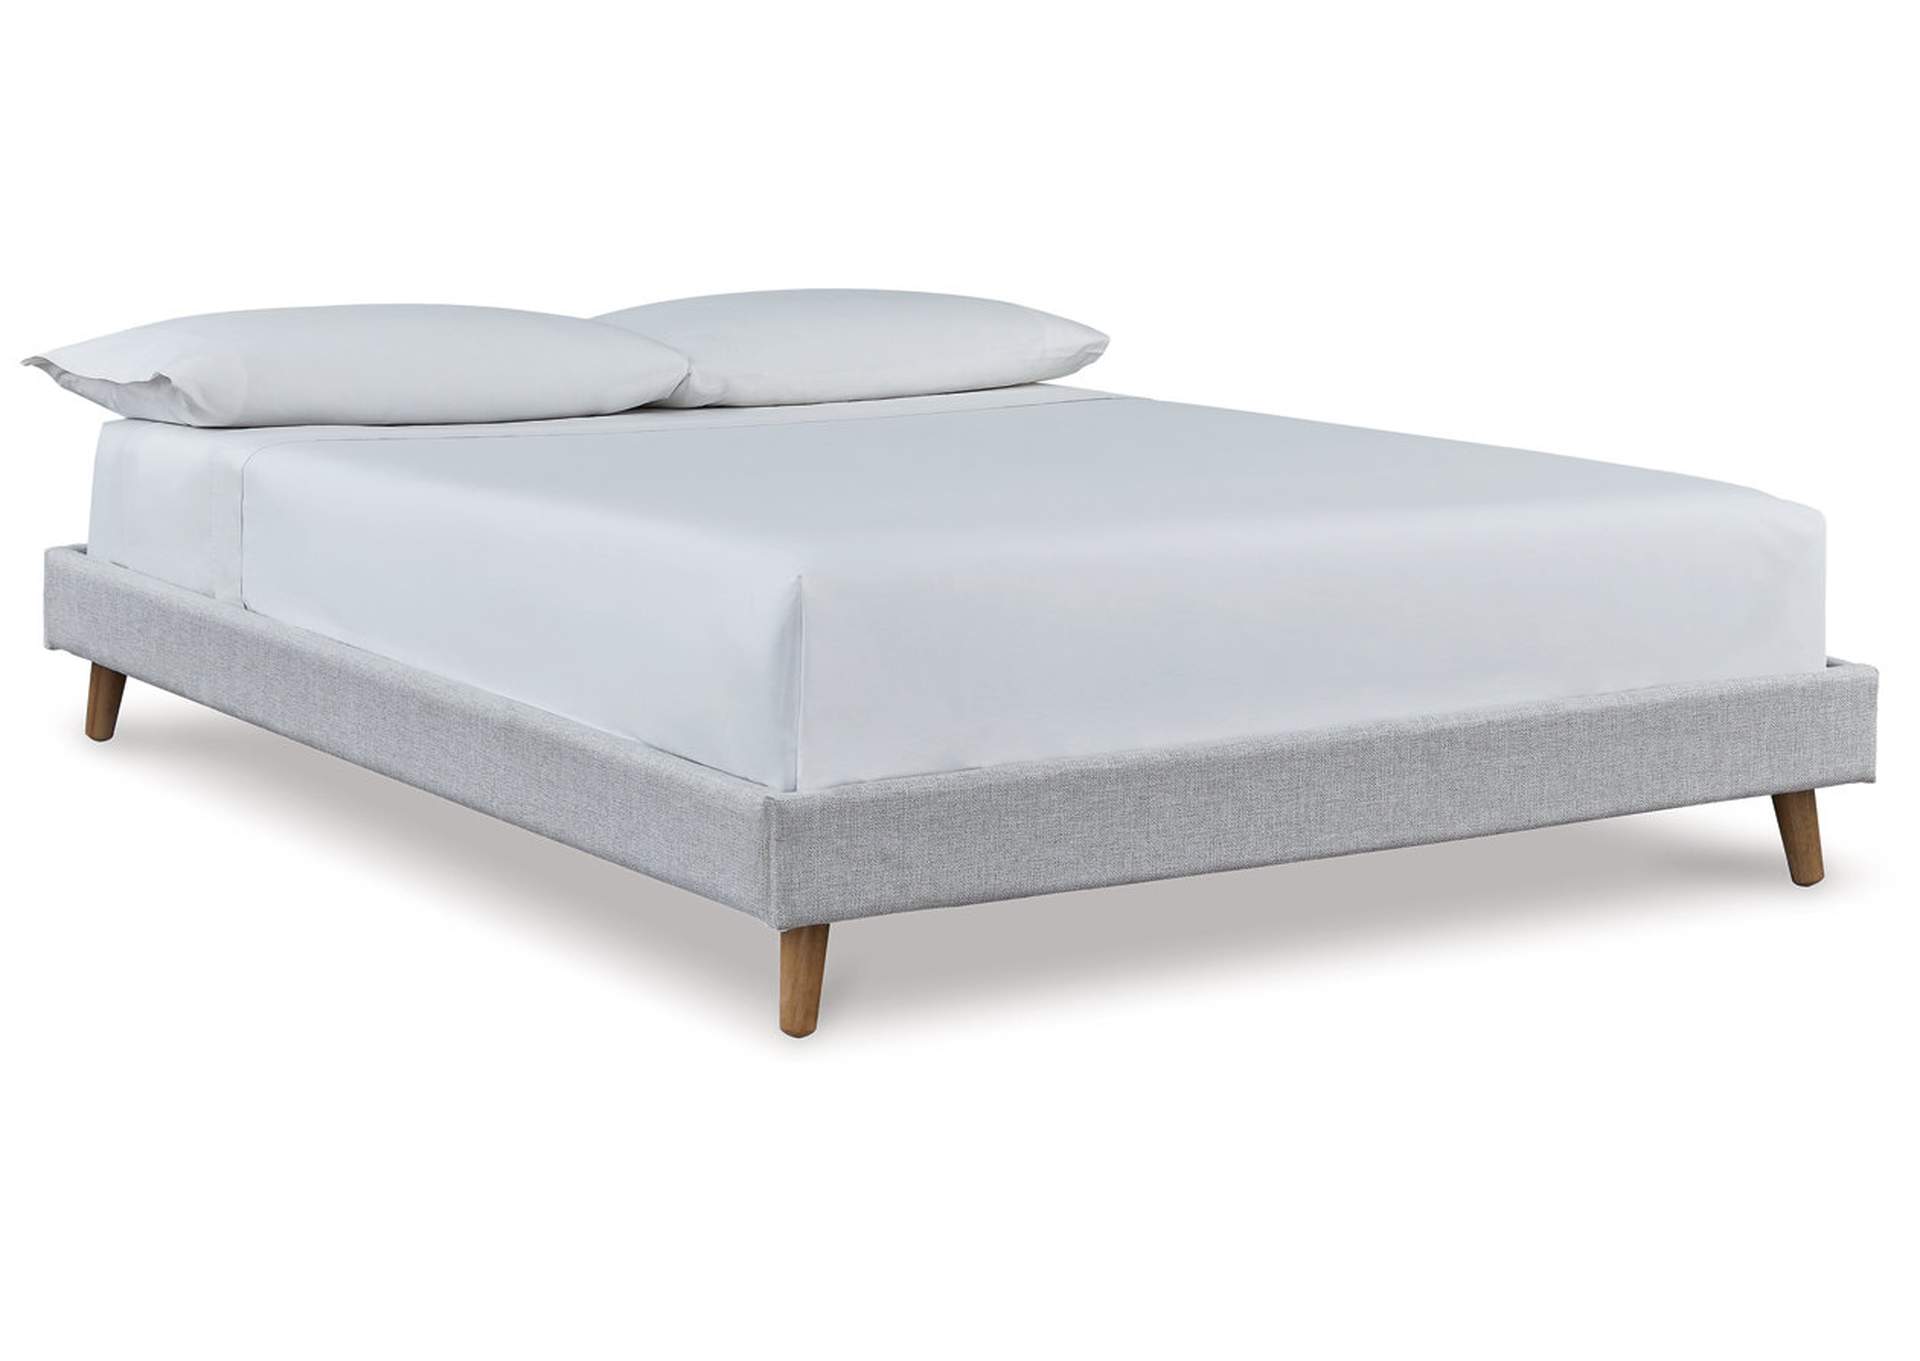 Tannally Full Upholstered Platform Bed